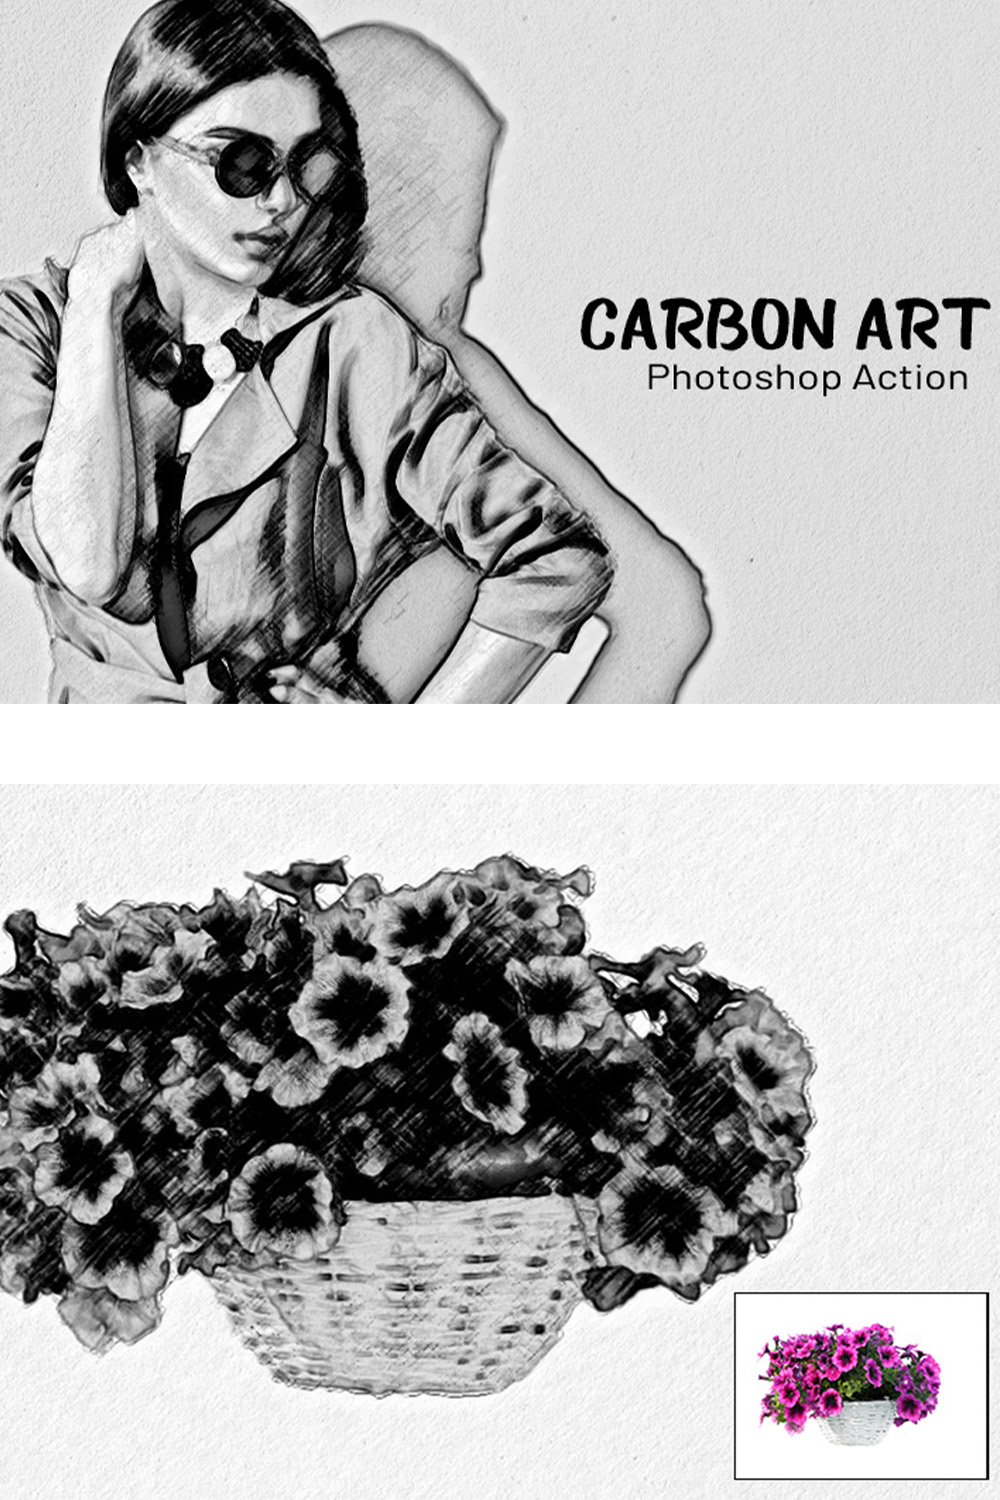 Carbon Art Photoshop Action pinterest preview image.